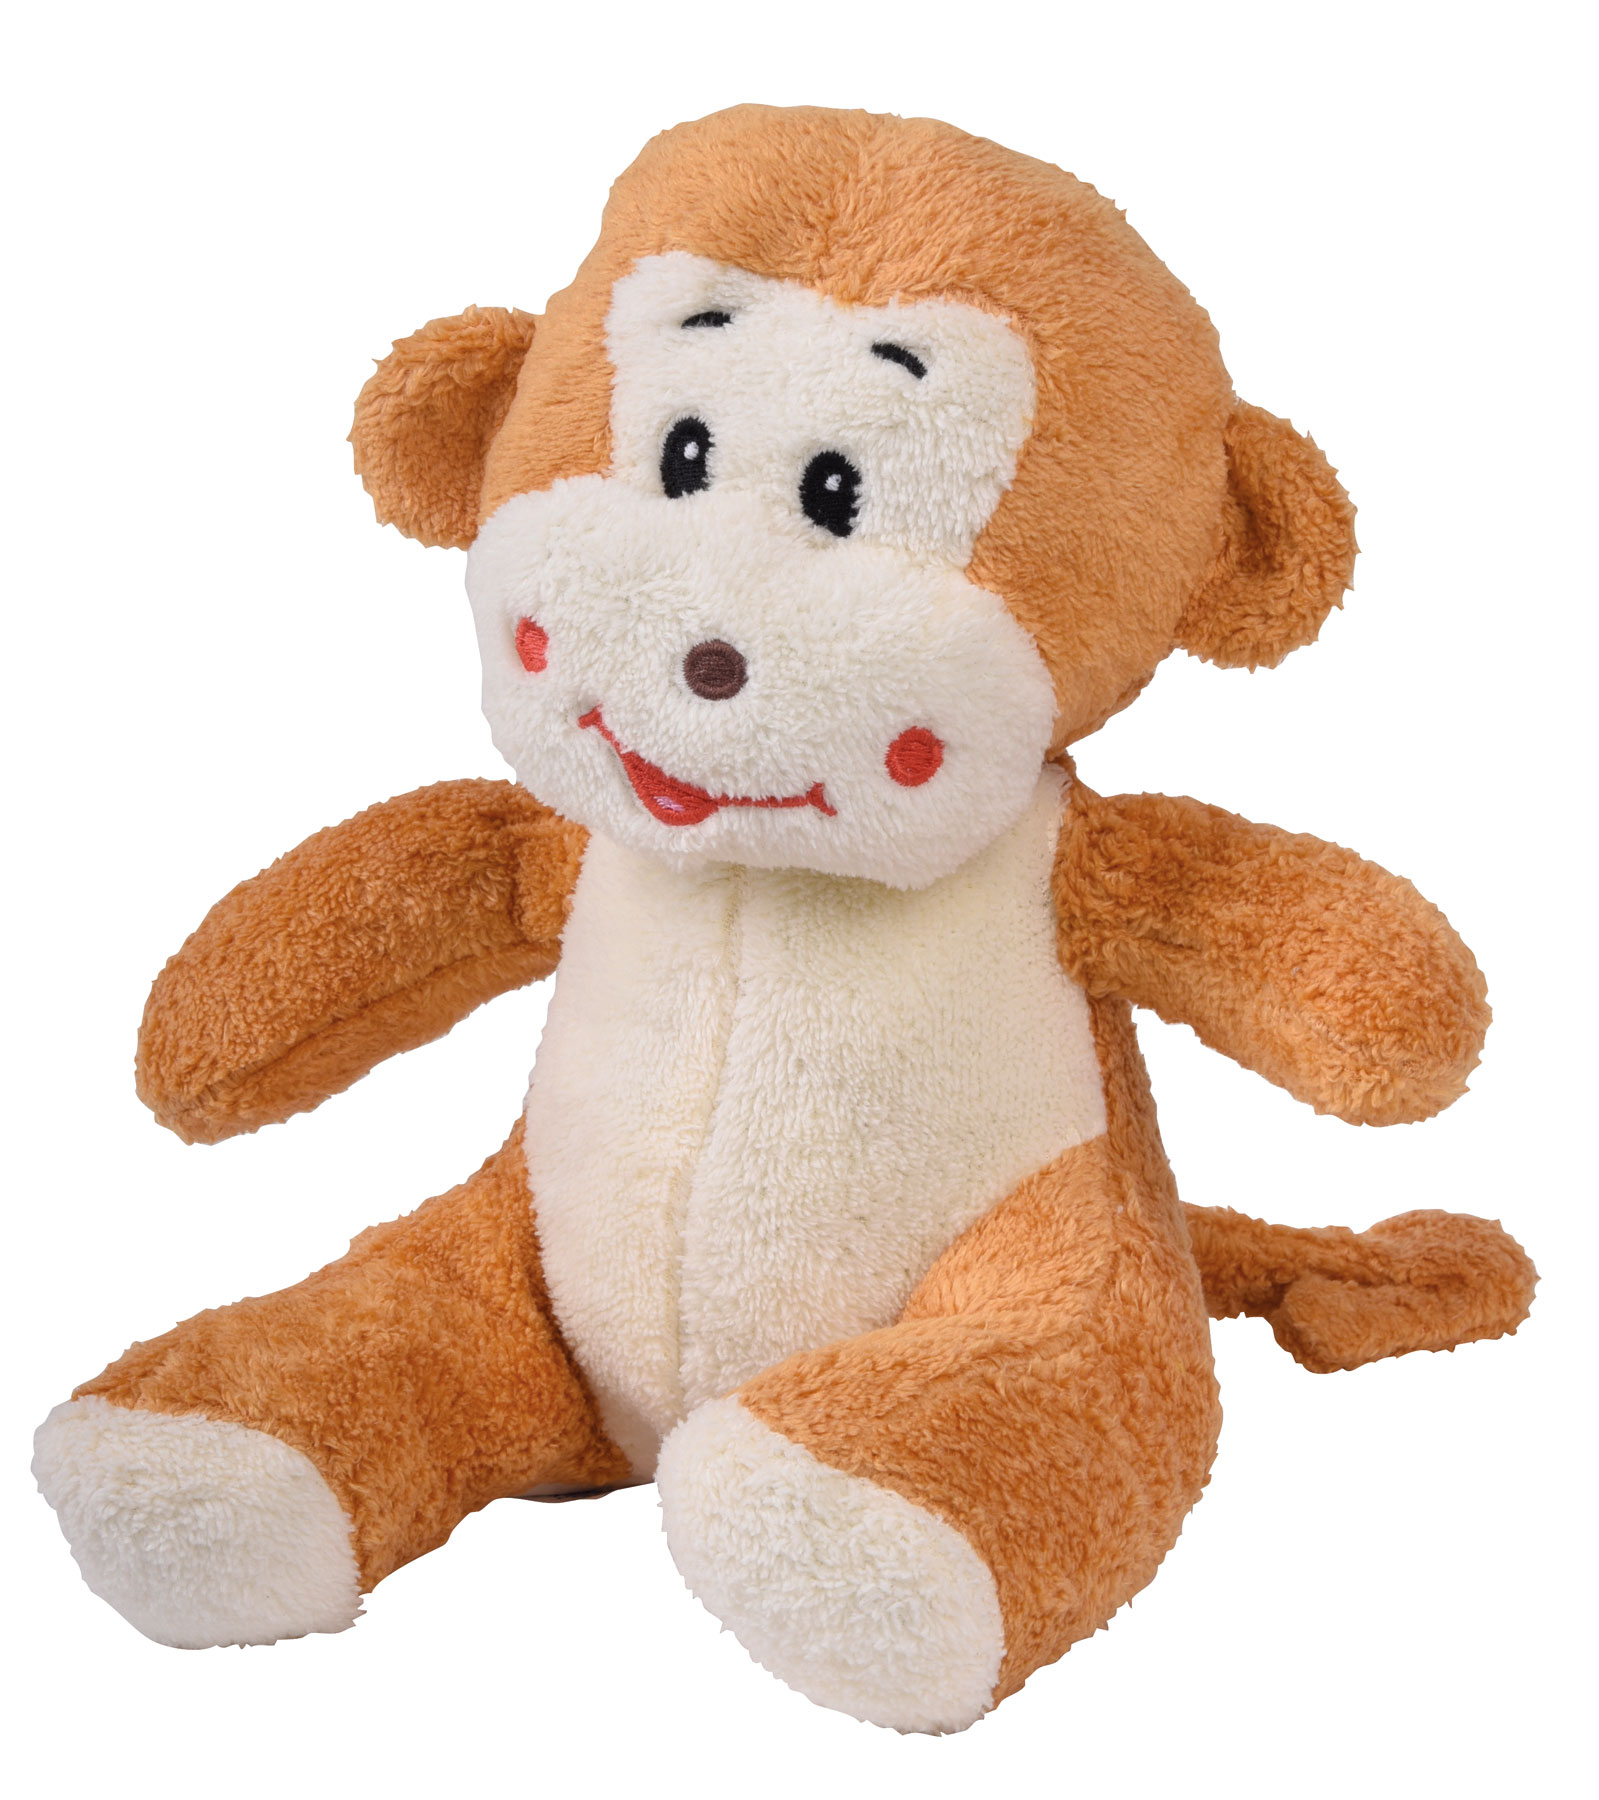 Plush monkey ELIAS - brown